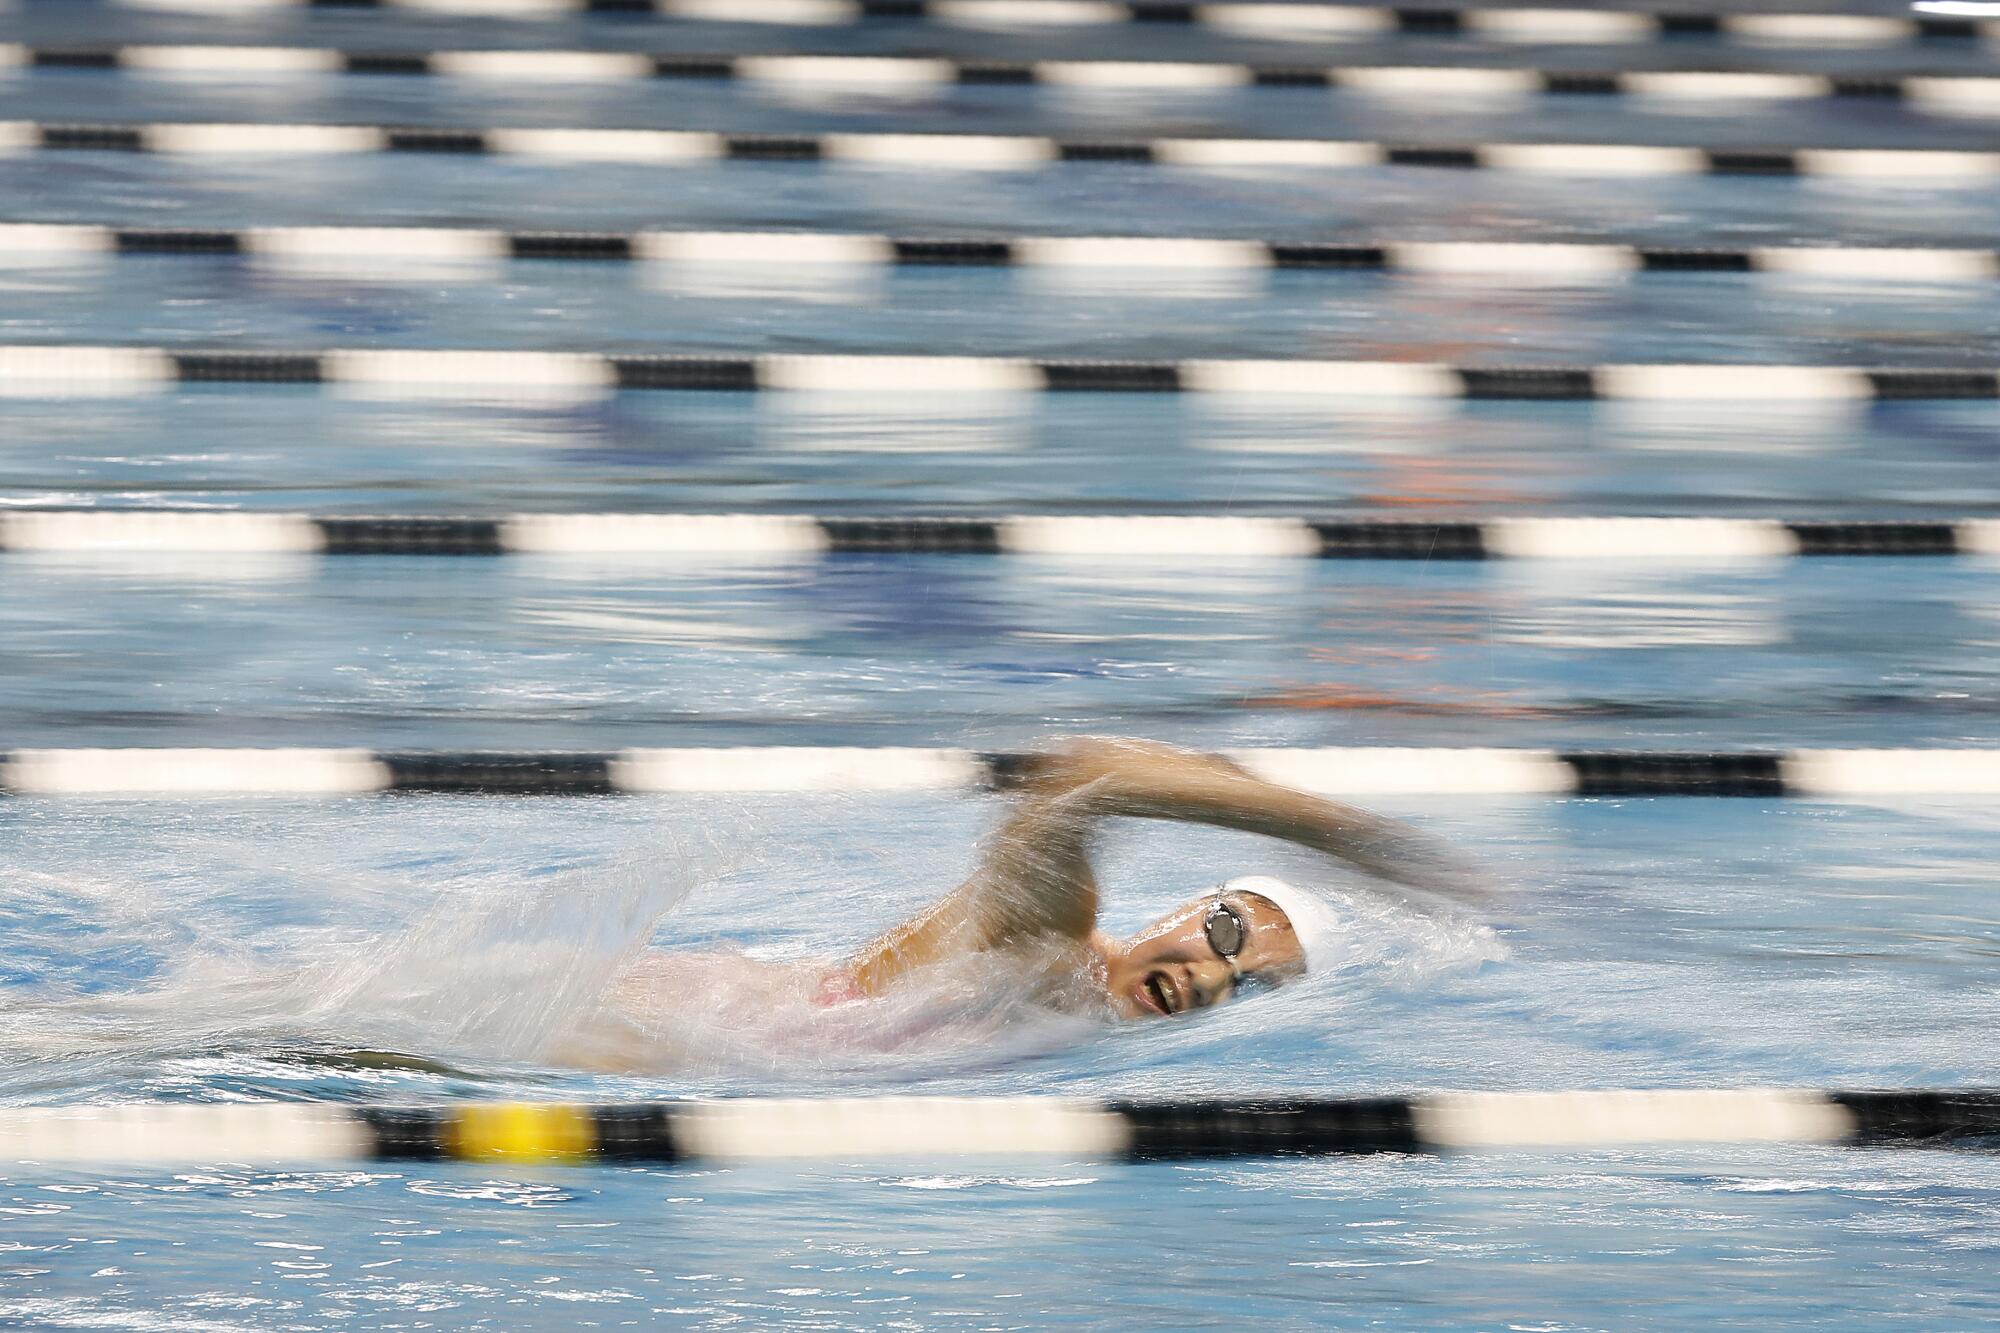 La Mirada Armada swimmer Kayla Han swims in a pool lane